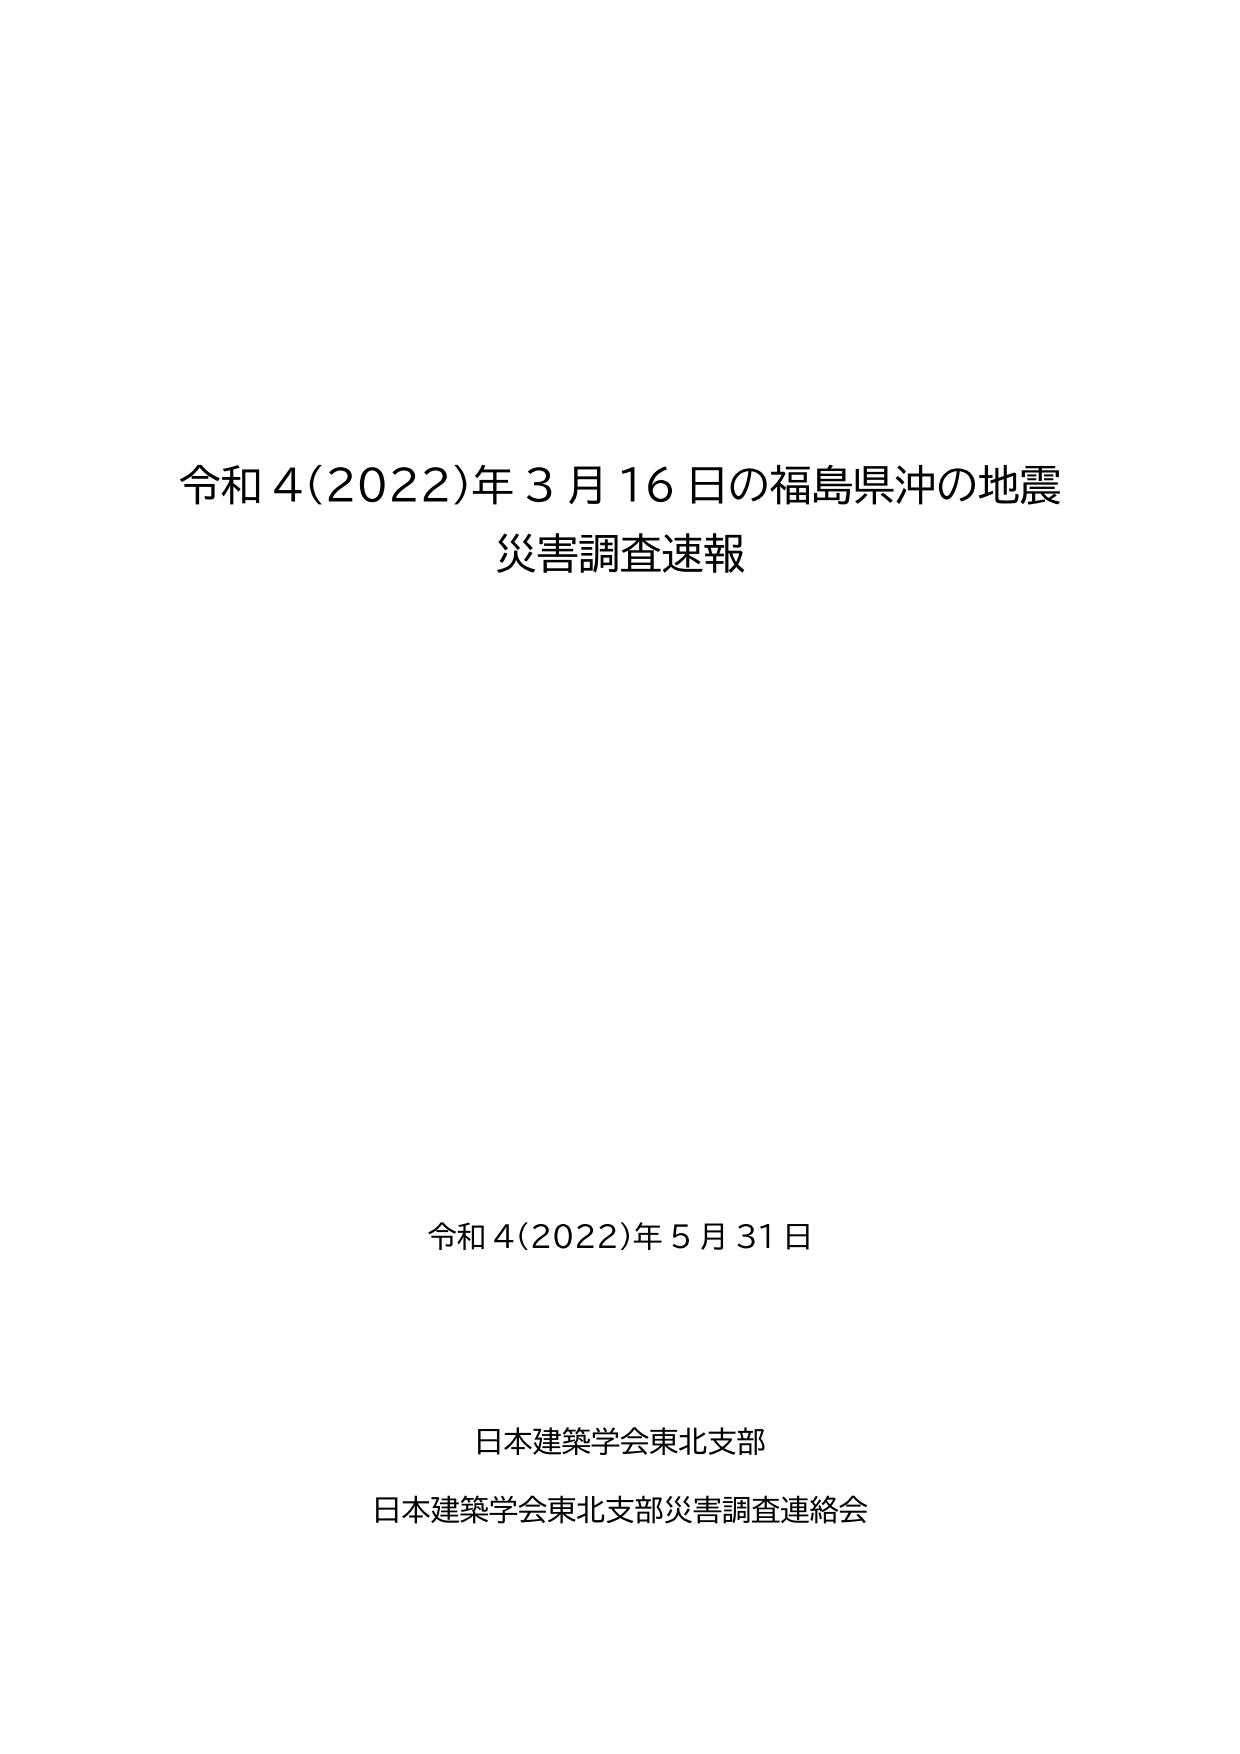 令和4（2022）年3月16日の福島県沖の地震 災害調査速報